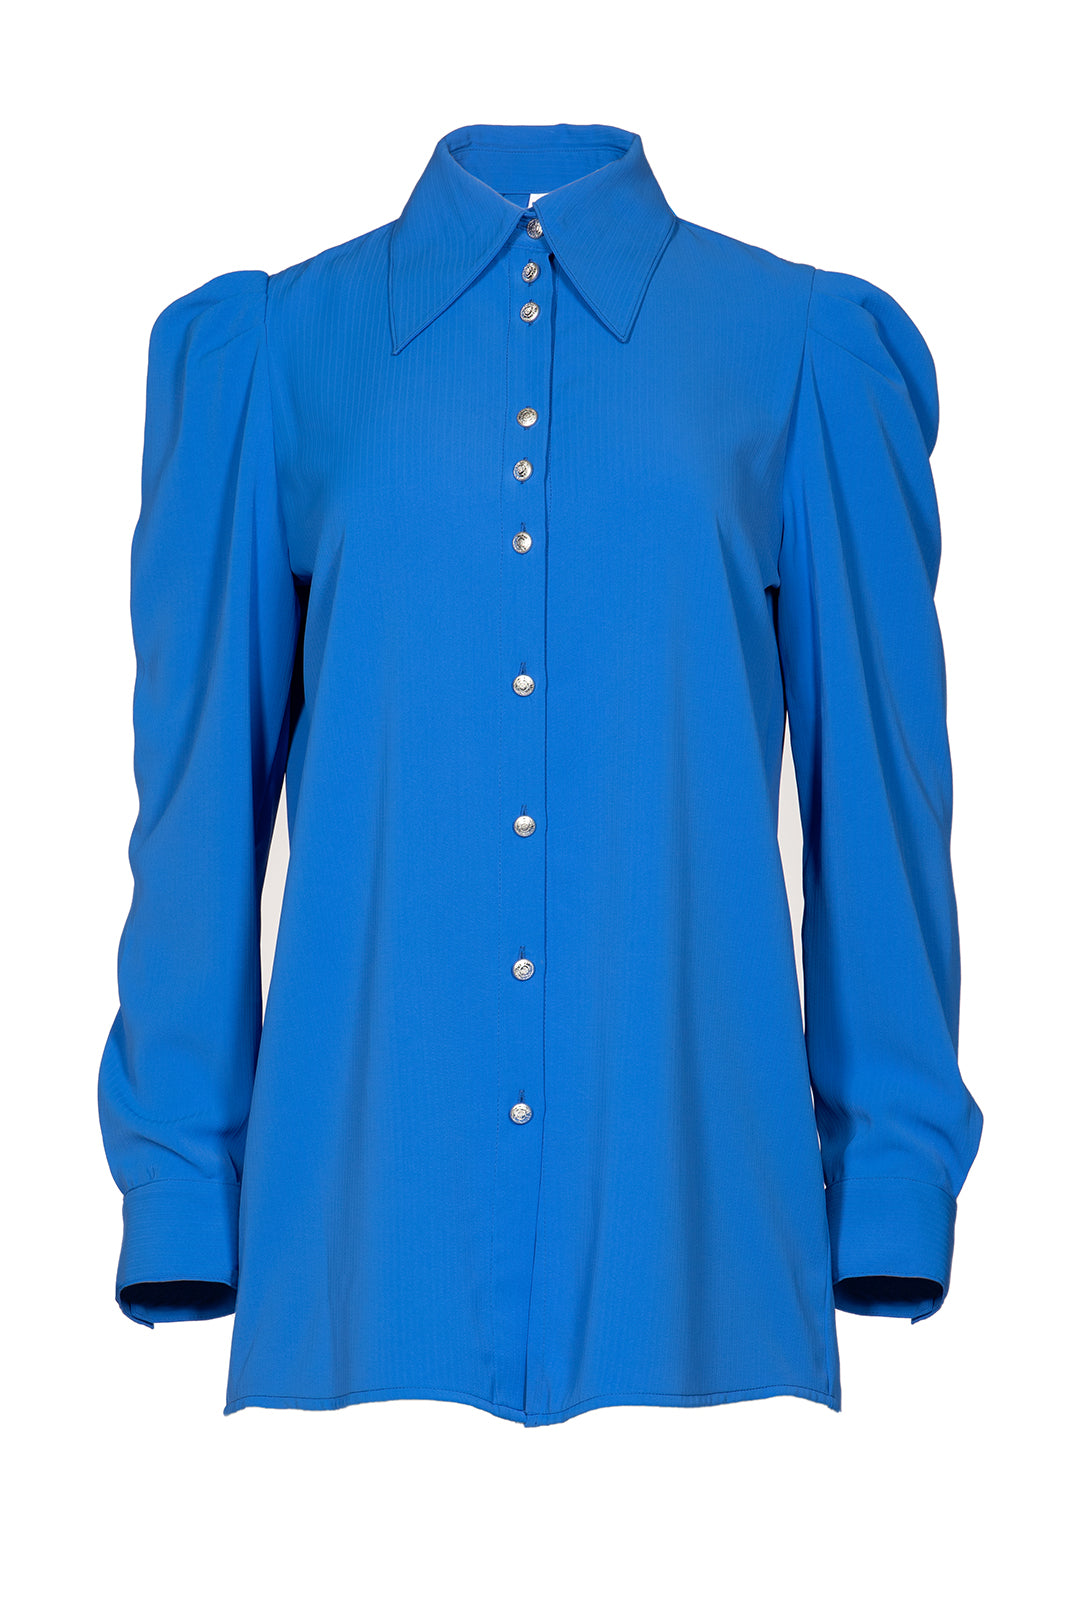 Chemise bleu royal manches bouffantes | Adele